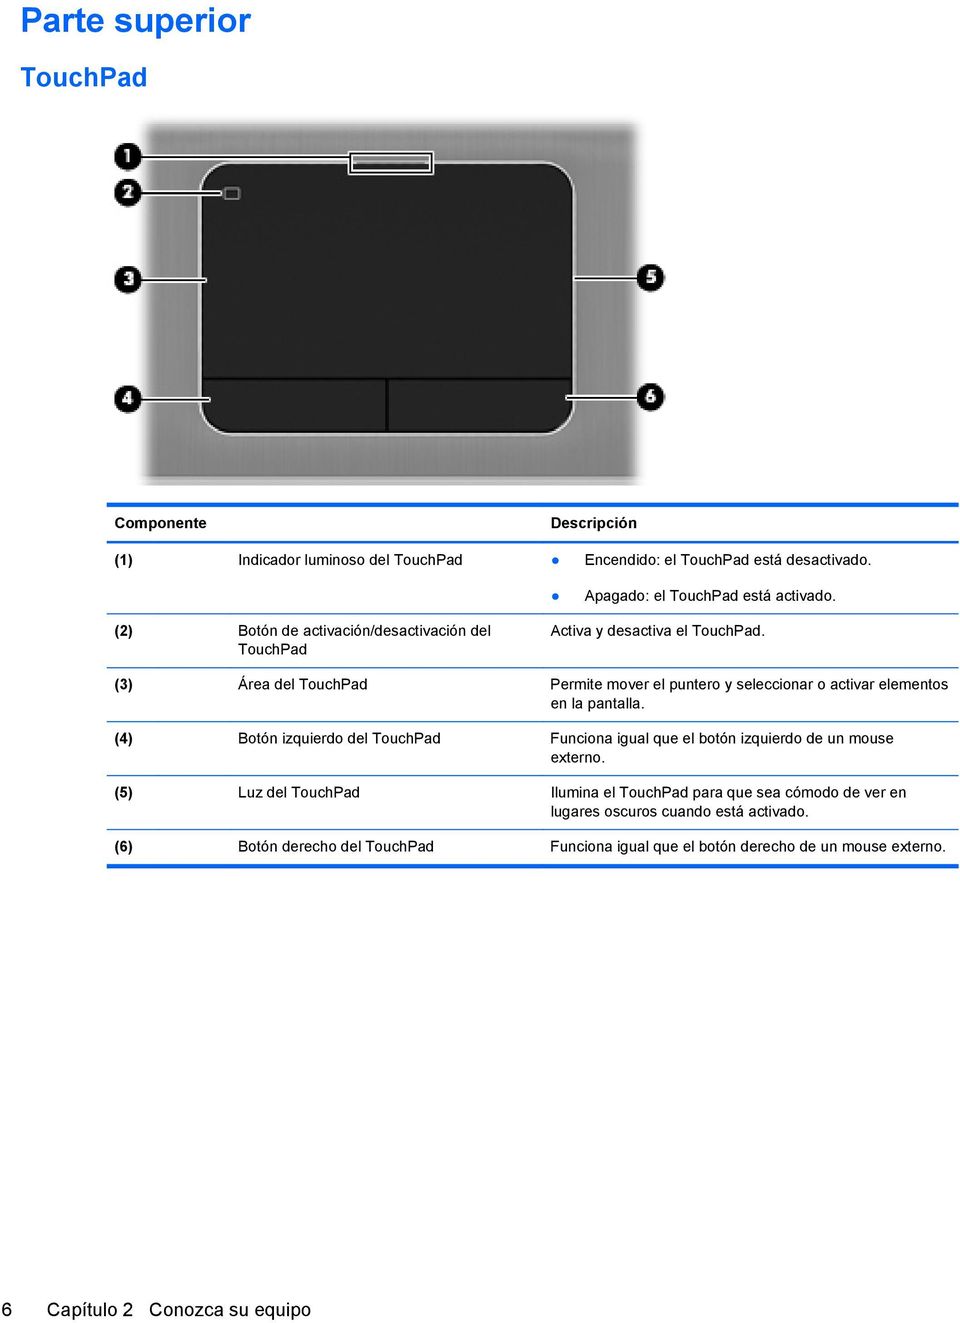 (3) Área del TouchPad Permite mover el puntero y seleccionar o activar elementos en la pantalla.